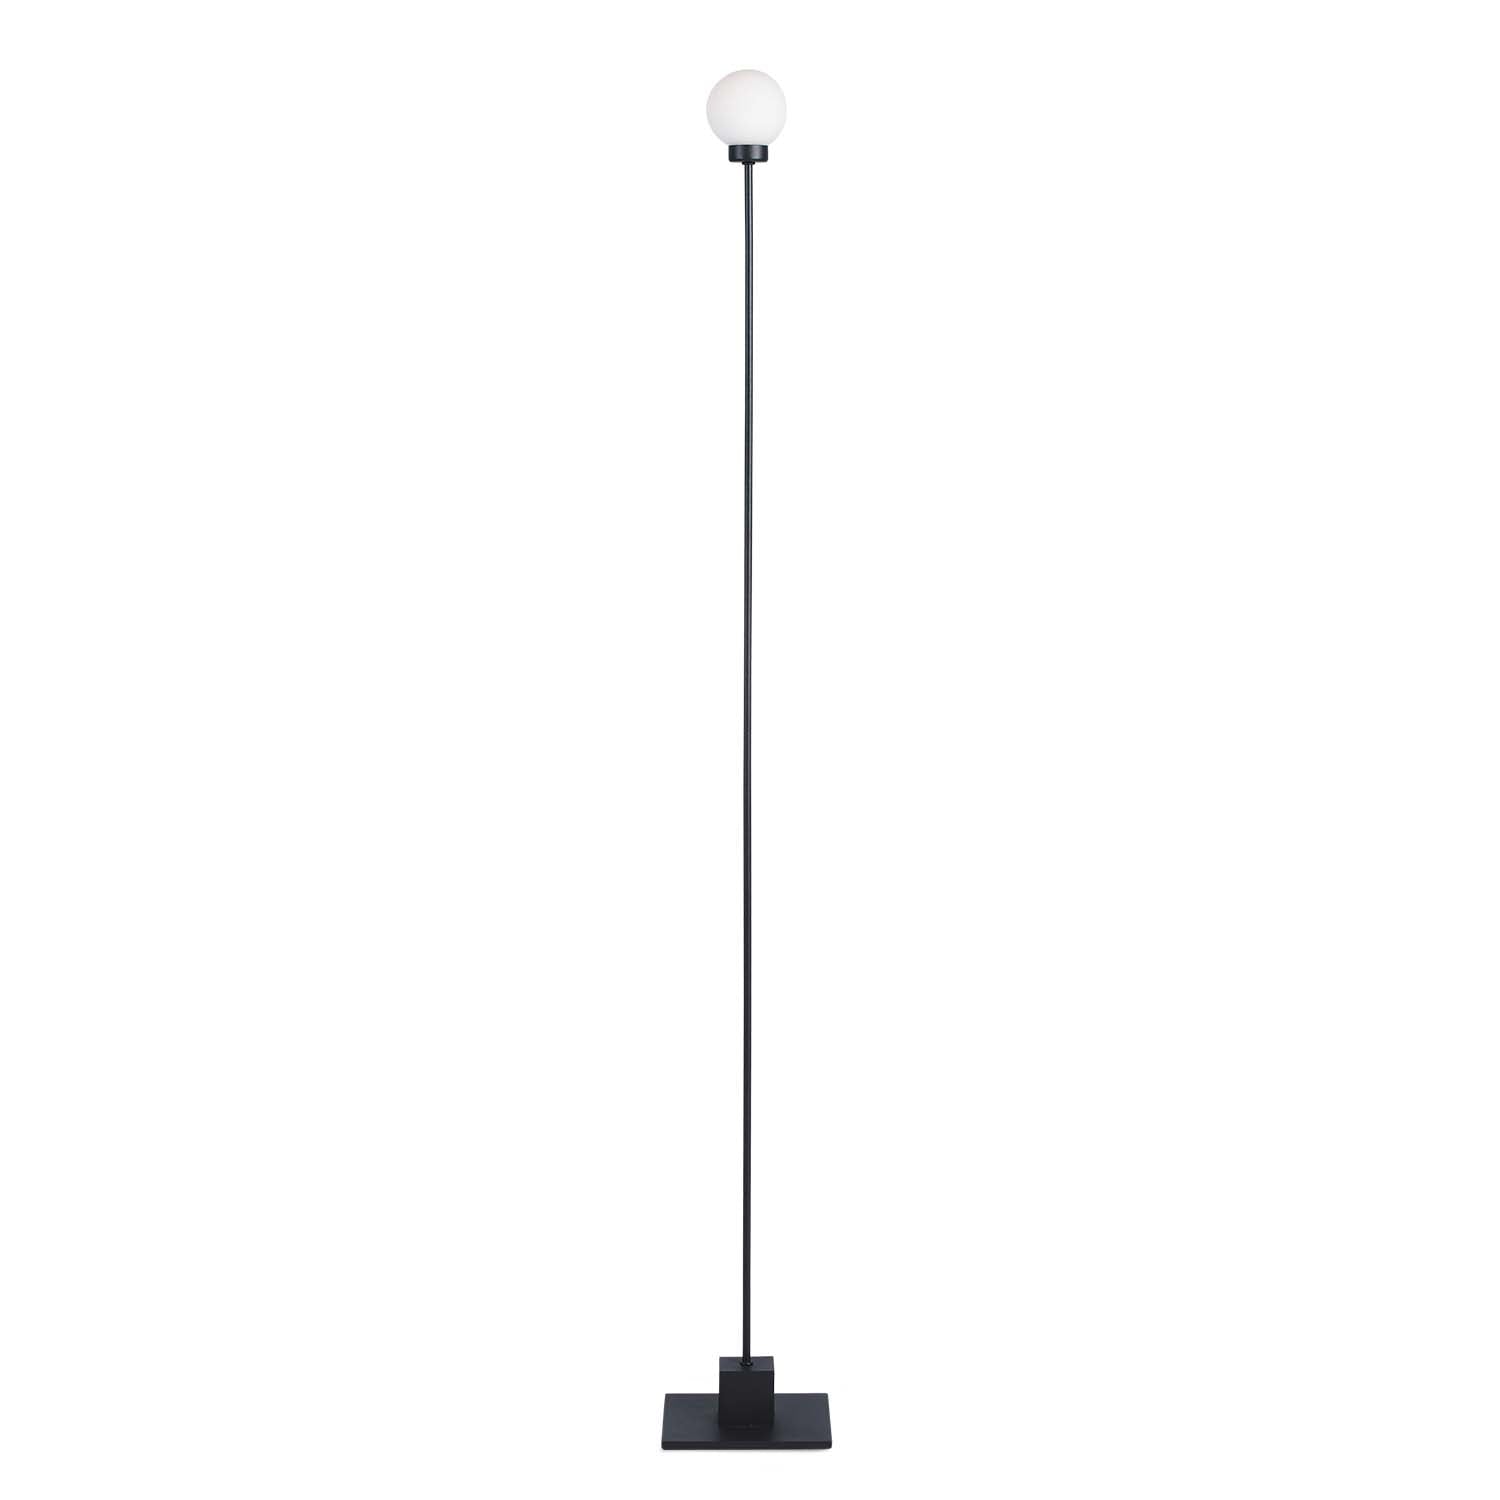 SNOWBALL - Minimalistische Stab-Stehlampe für das Wohnzimmer, Designerkreation